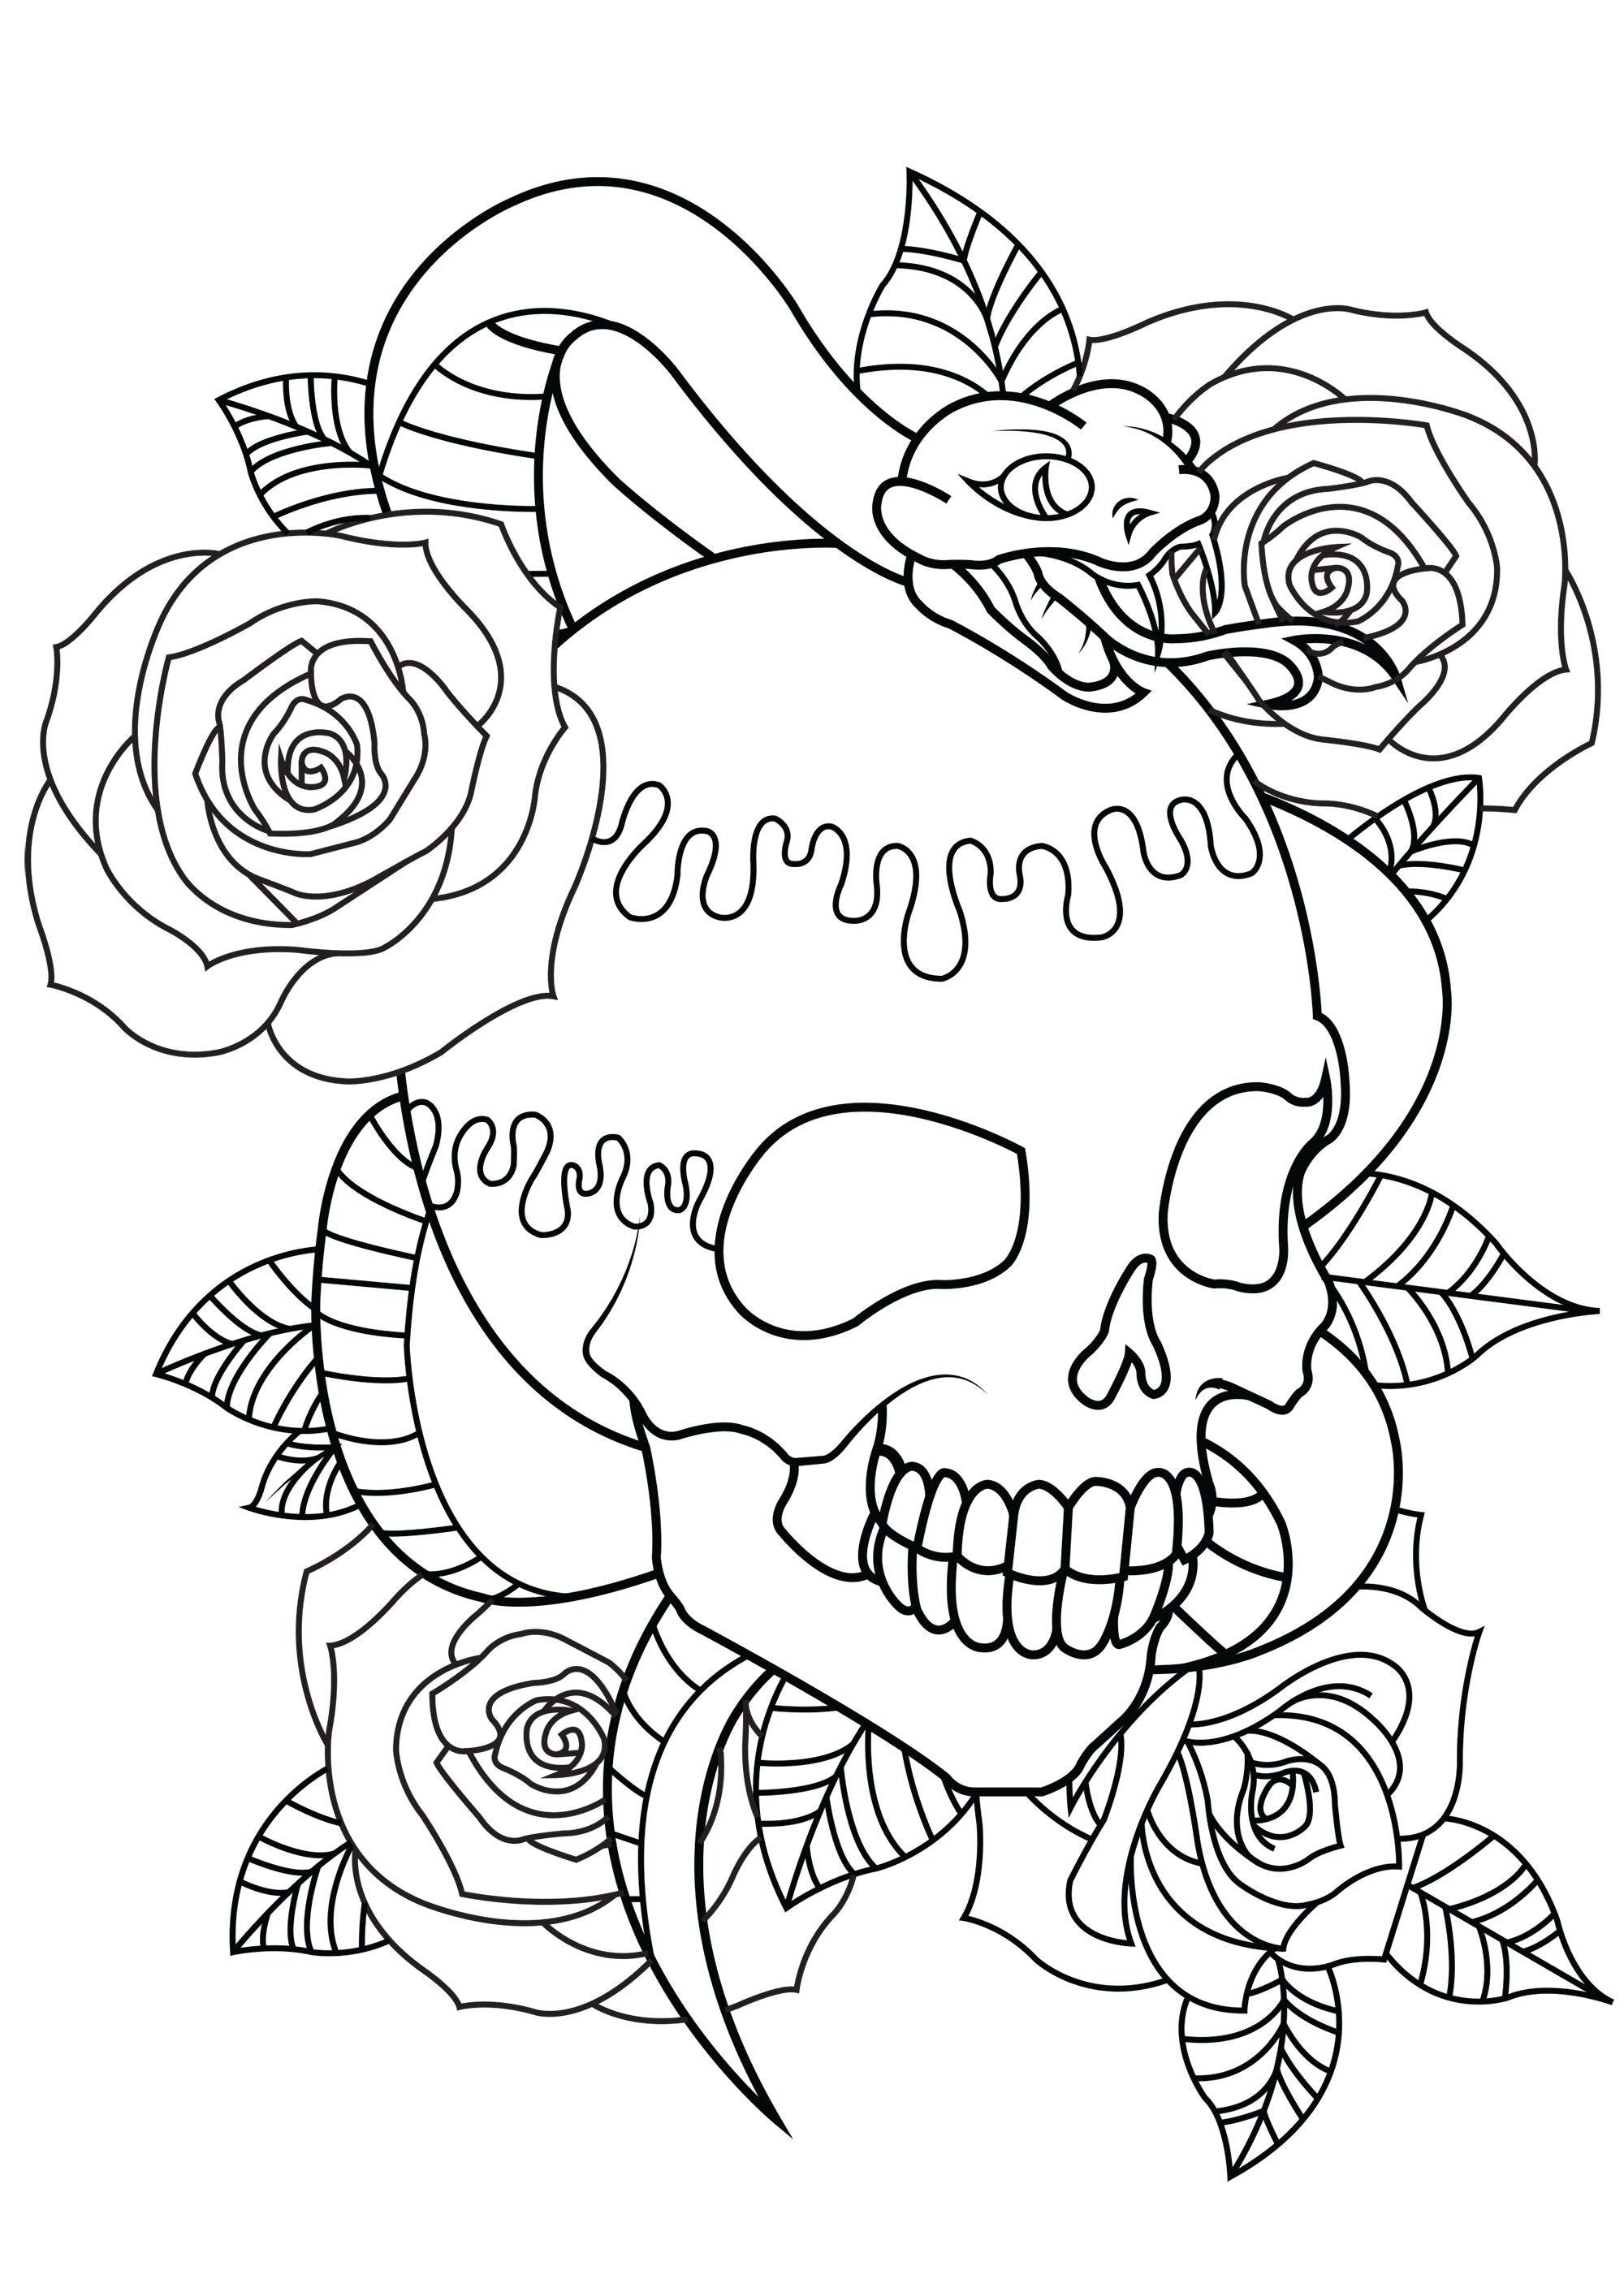 Tatouage : crâne, serpent et roses